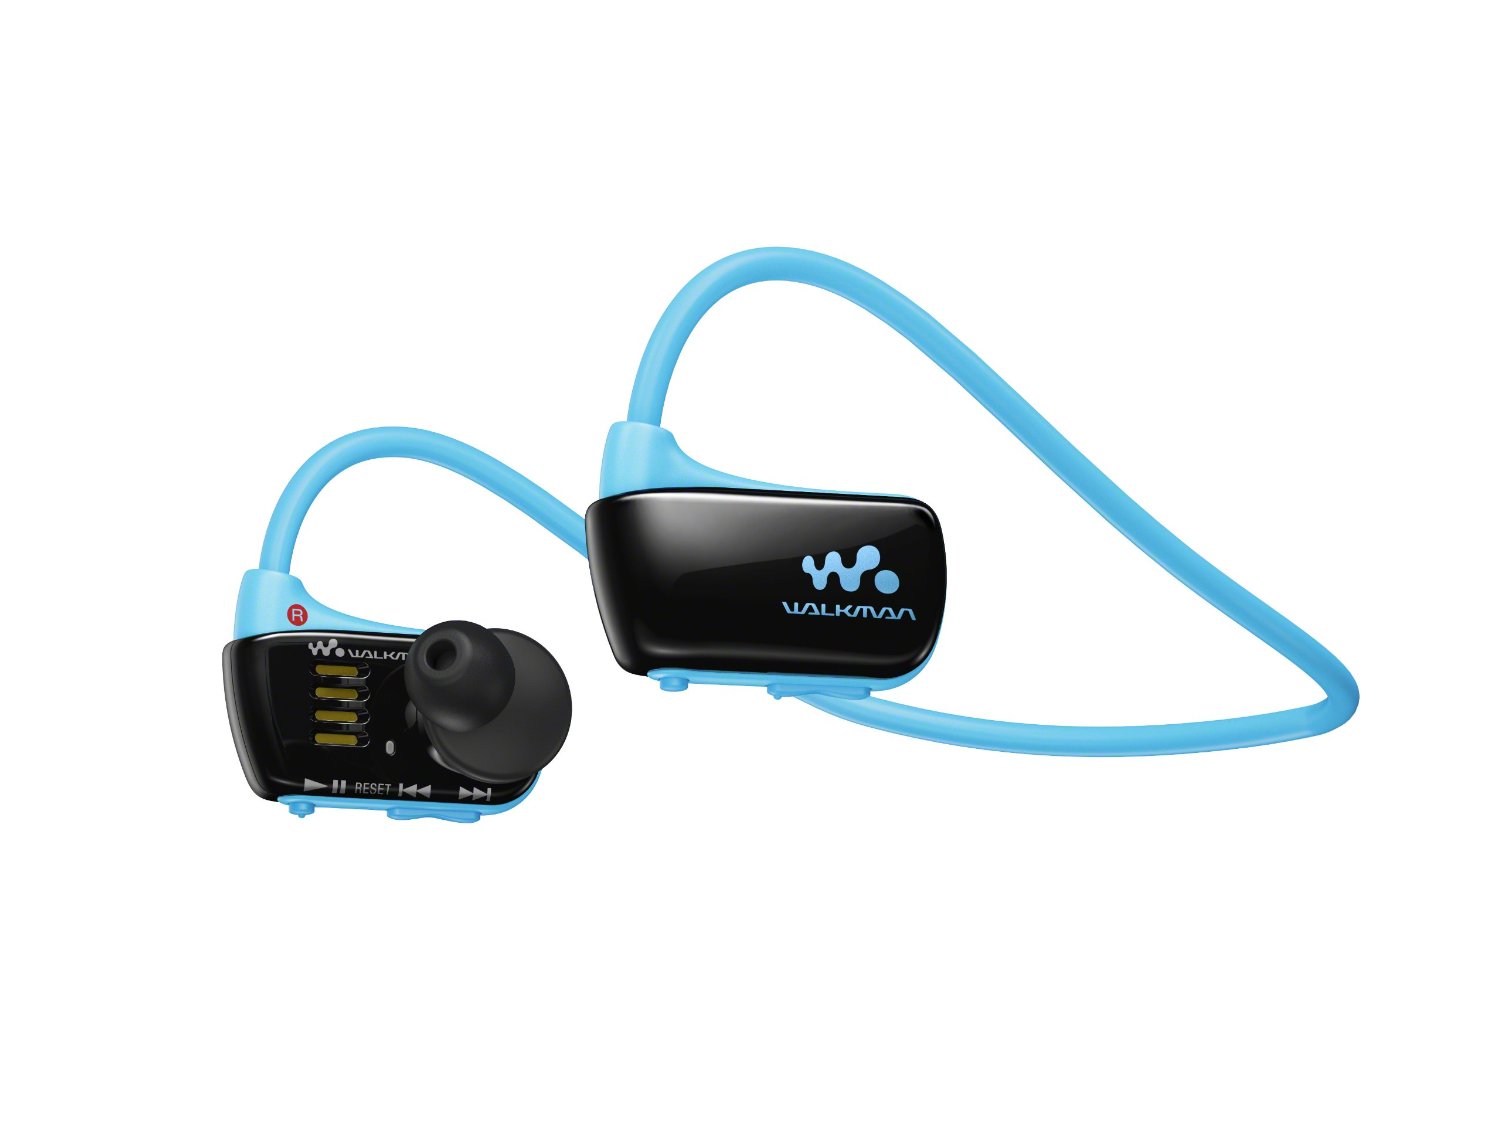 NWZW273S 4 Go Sport étanche lecteur MP3 Walkman Sony (bleu) ave